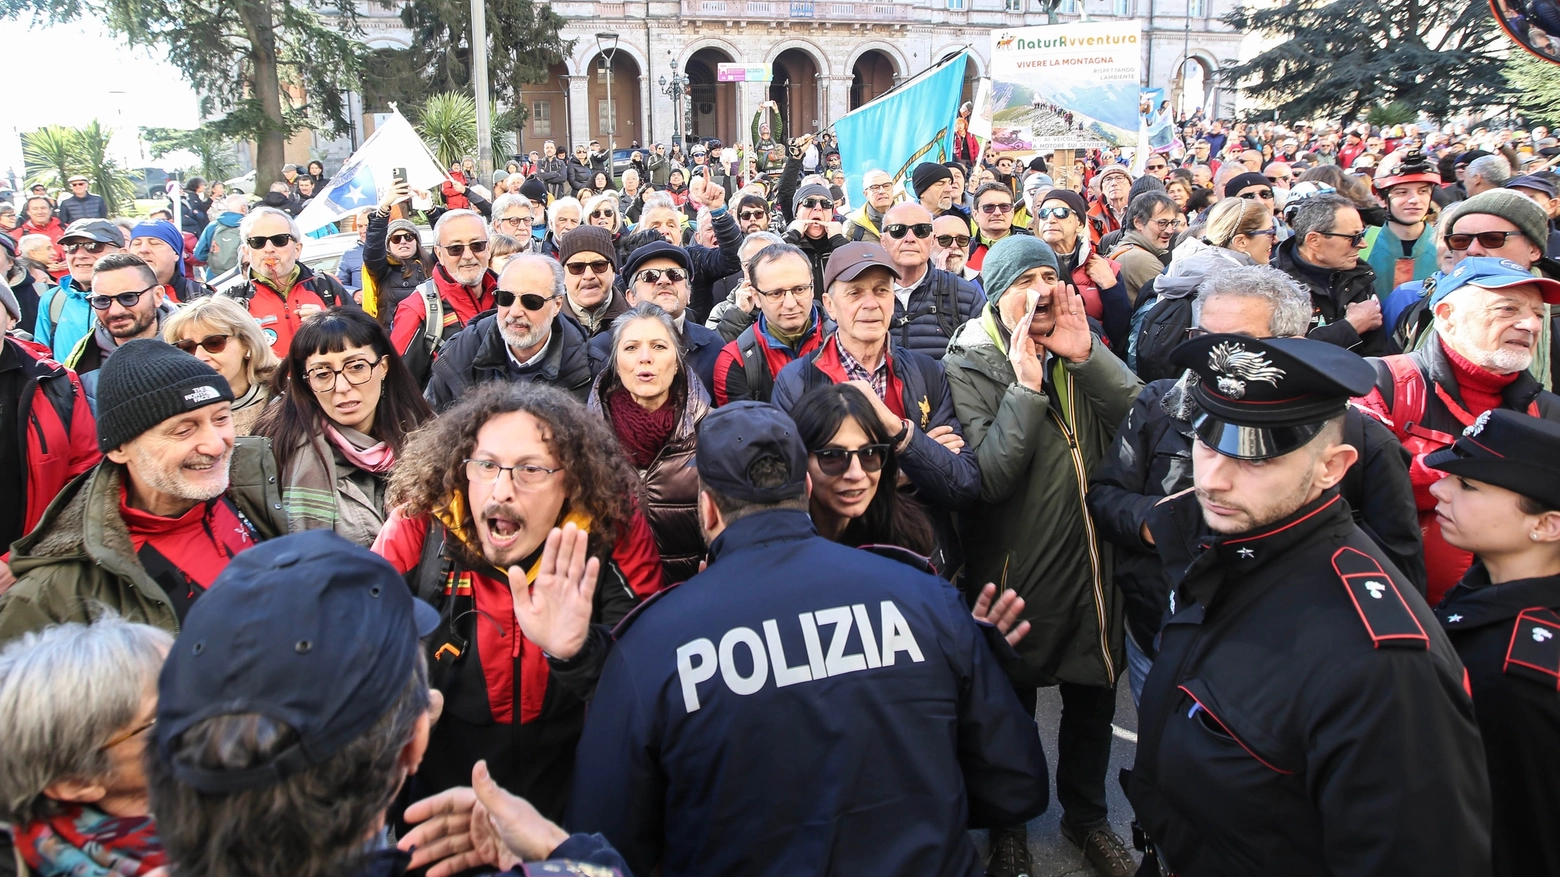 La protesta a Perugia (foto Crocchioni)